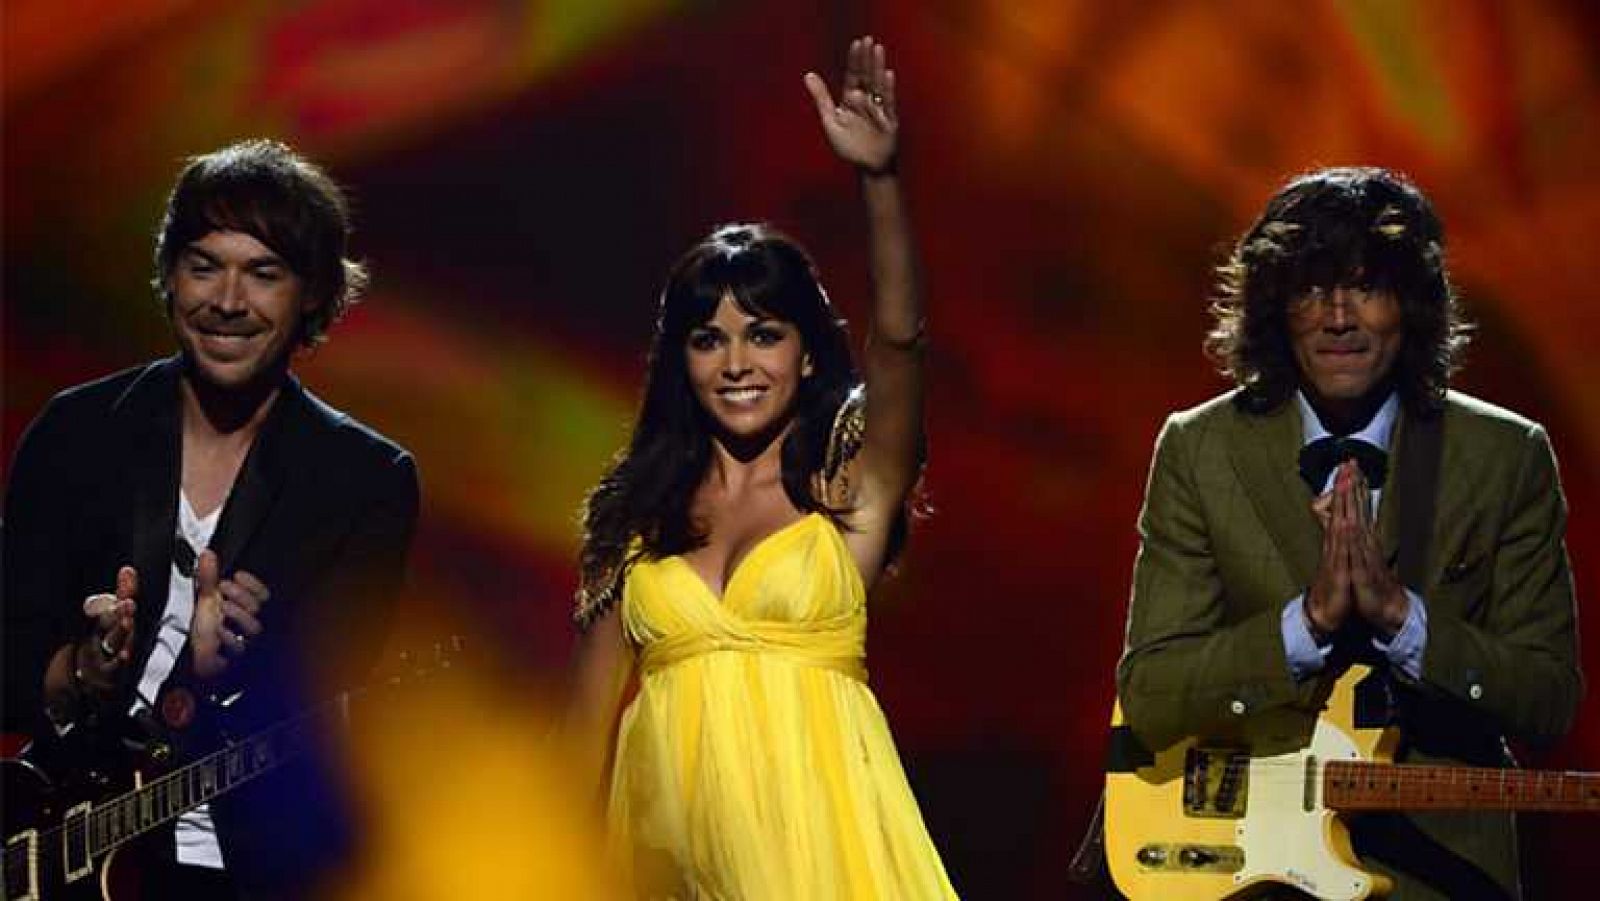 Festival de Eurovisión 2013. Edición 58 - Ver ahora 